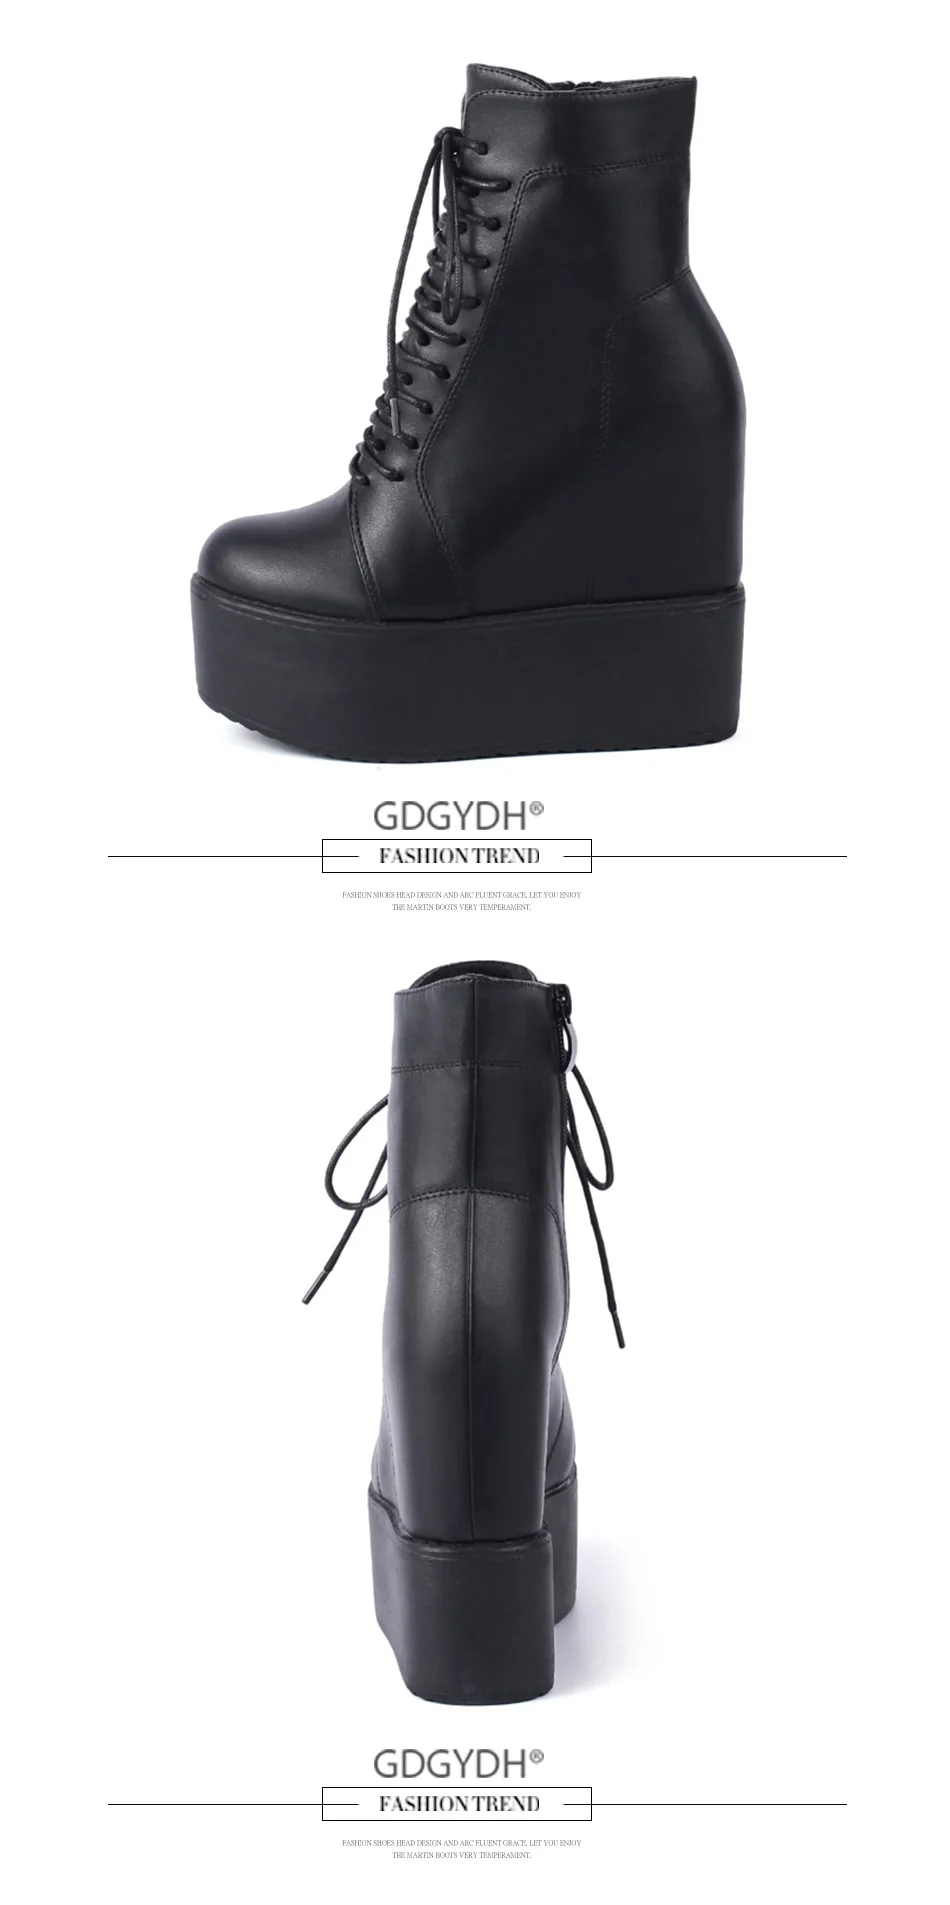 Gdgydh/; ботильоны на танкетке; цвет белый, черный; обувь на резиновой подошве; ботинки на платформе; Женская Осенняя обувь на платформе и каблуке 13 см со шнуровкой